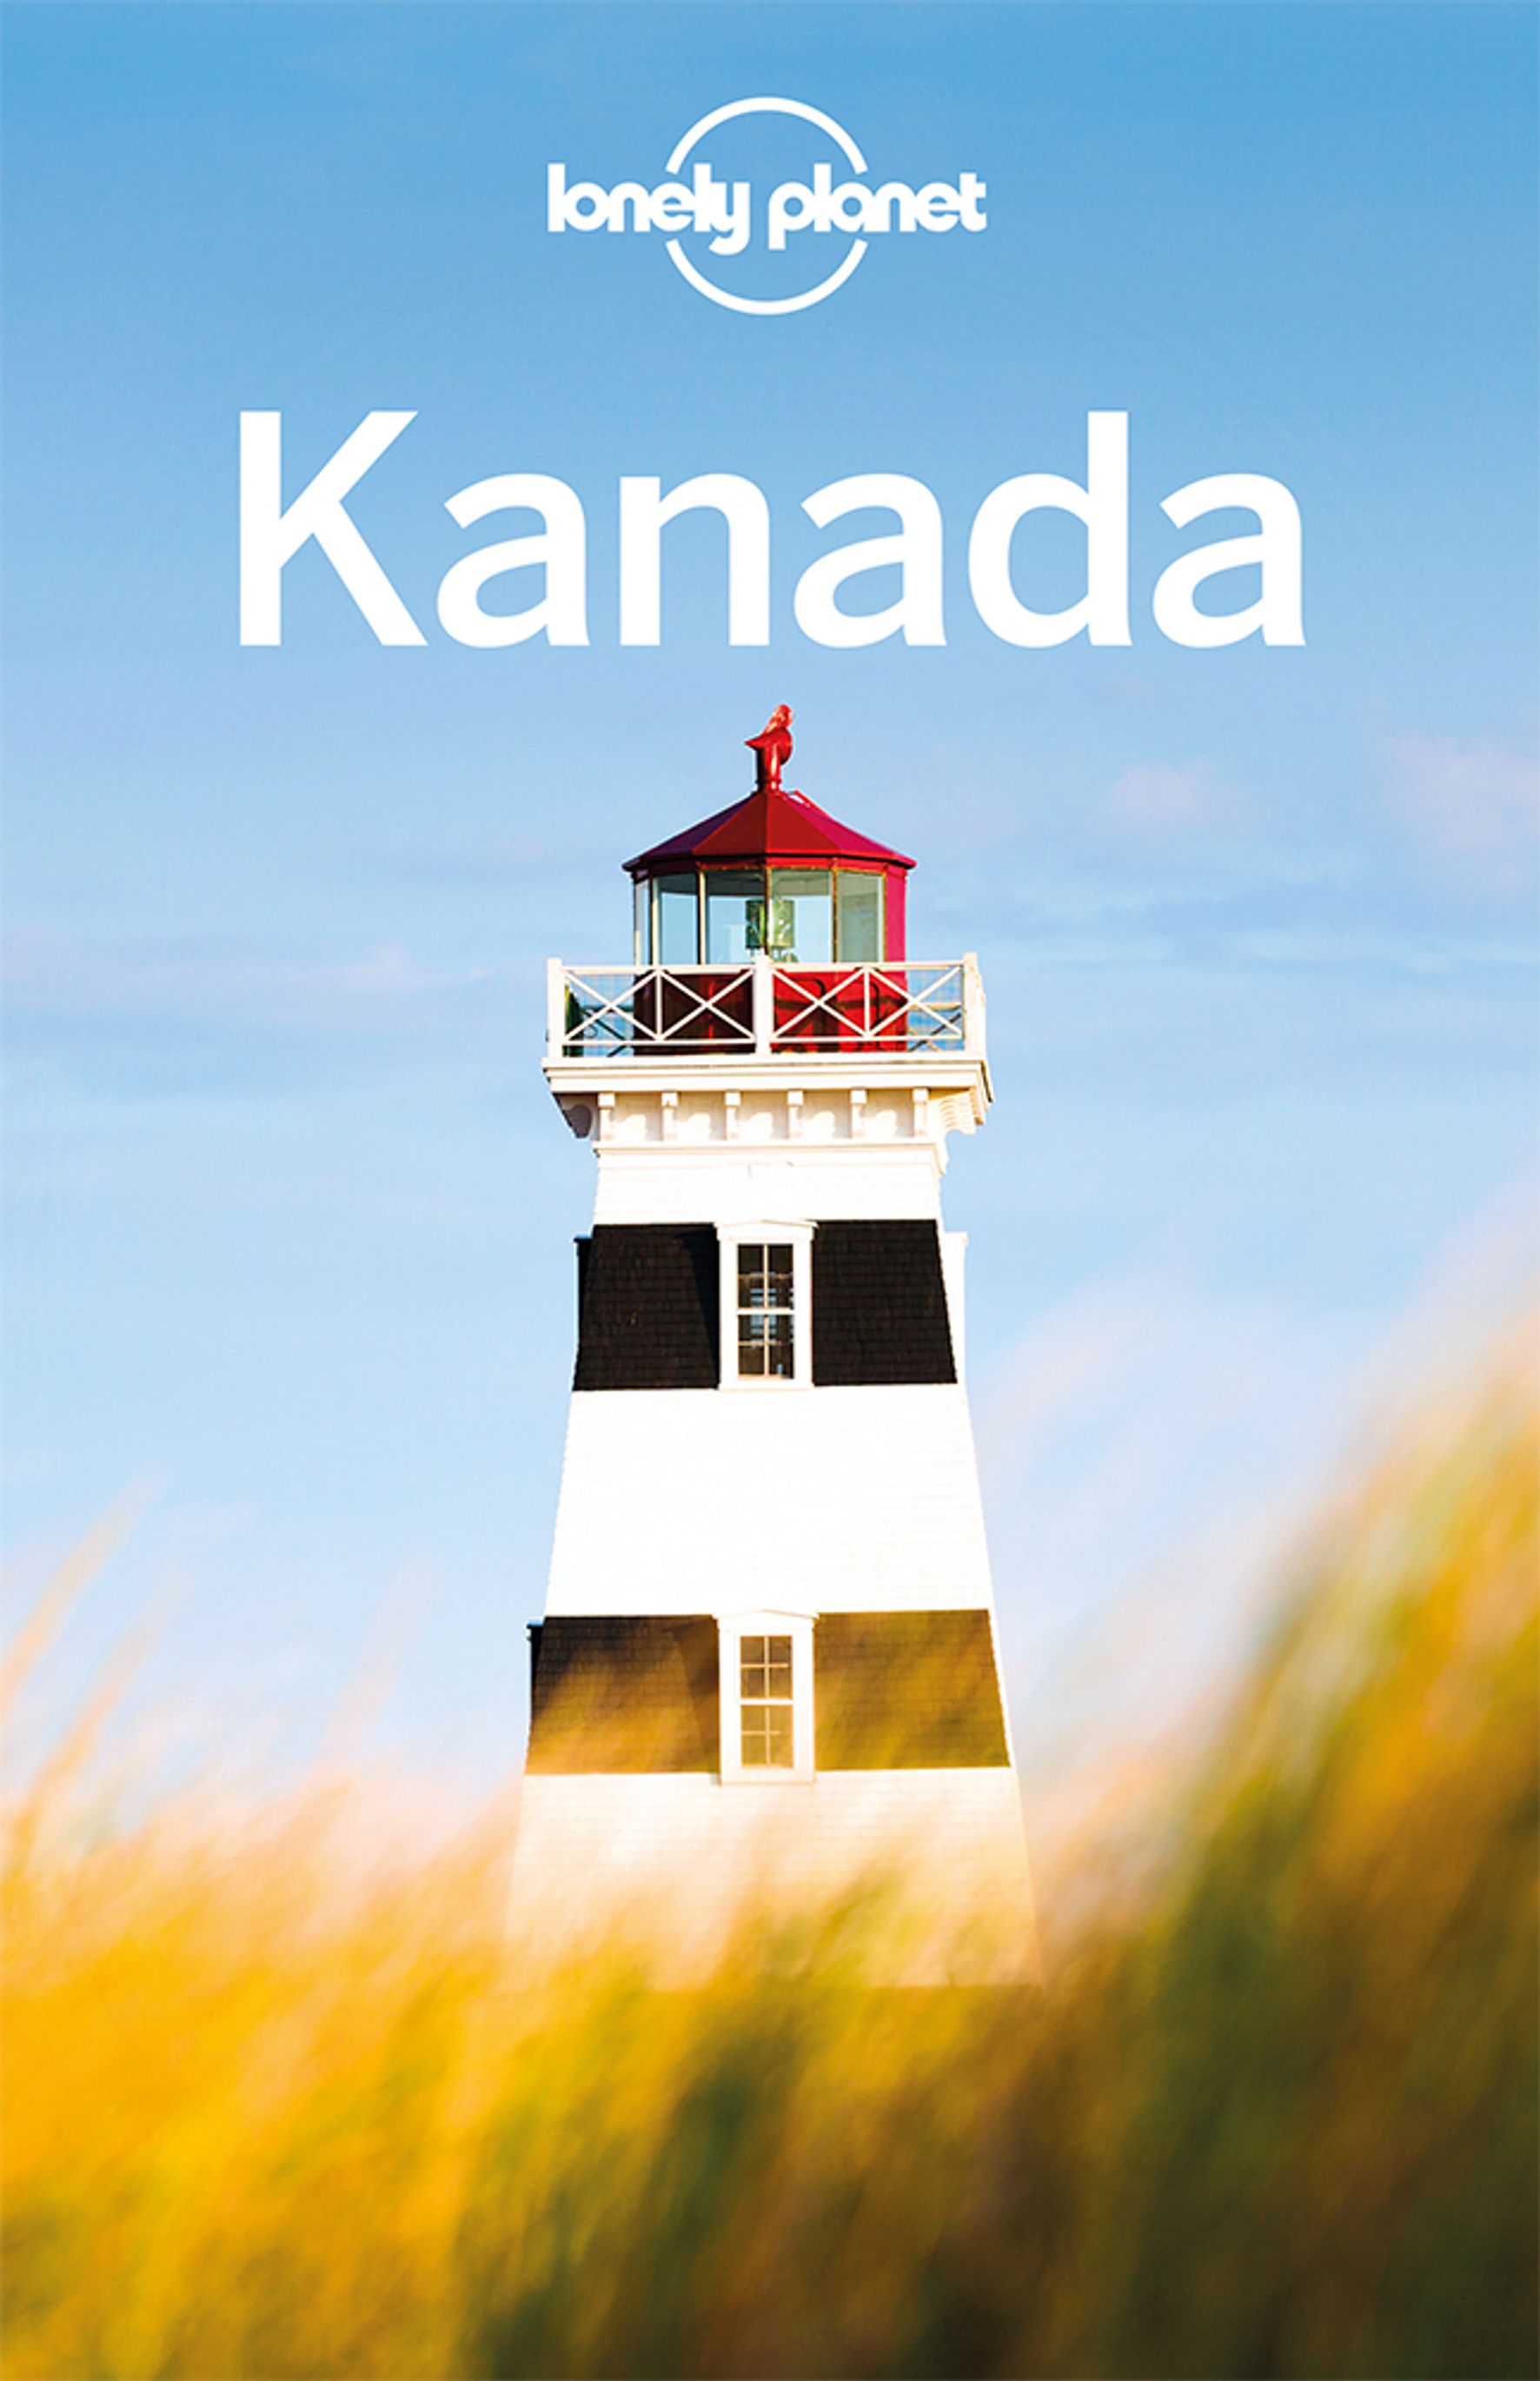 Lonely Planet Kanada (eBook)